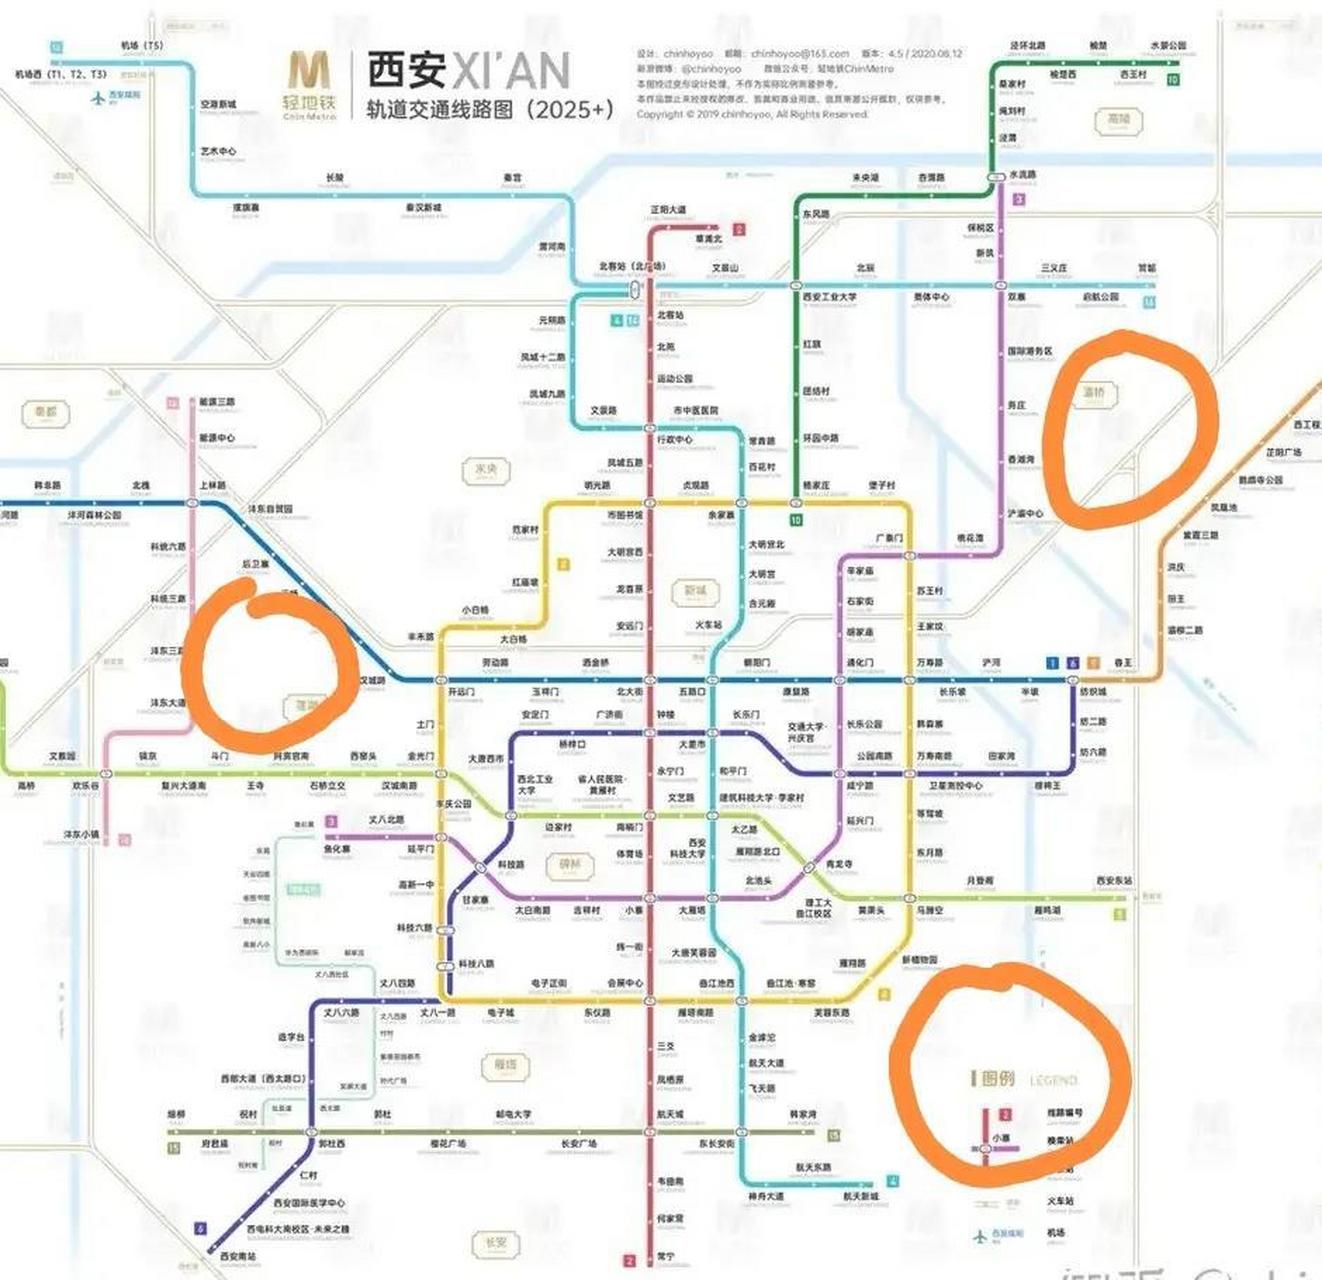 西安2025年地铁规划图,可以看到被遗漏的3个区域,东北角浐灞生态区,河